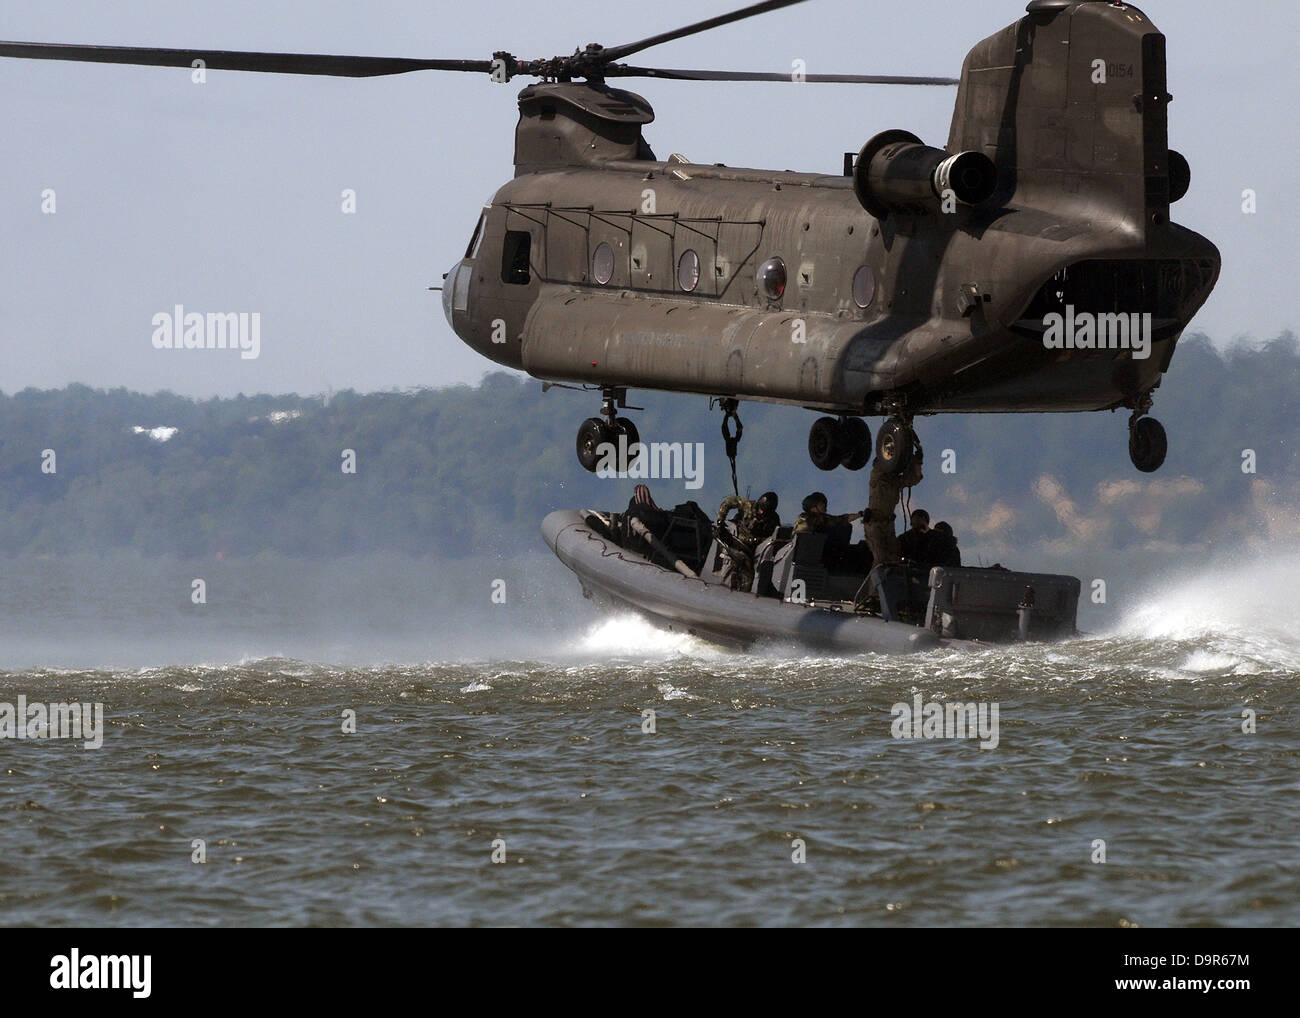 U.S. Navy SEALS in einem Special Warfare Combatant-Craft legen eine spezielle Marinekriegsführung 11-Meter Festrumpf Schlauchboot auf eine Armee CH-47 Chinook-Hubschrauber während einer Übung 16. Juli 2008 in Fort Eustis, Virginia. Stockfoto